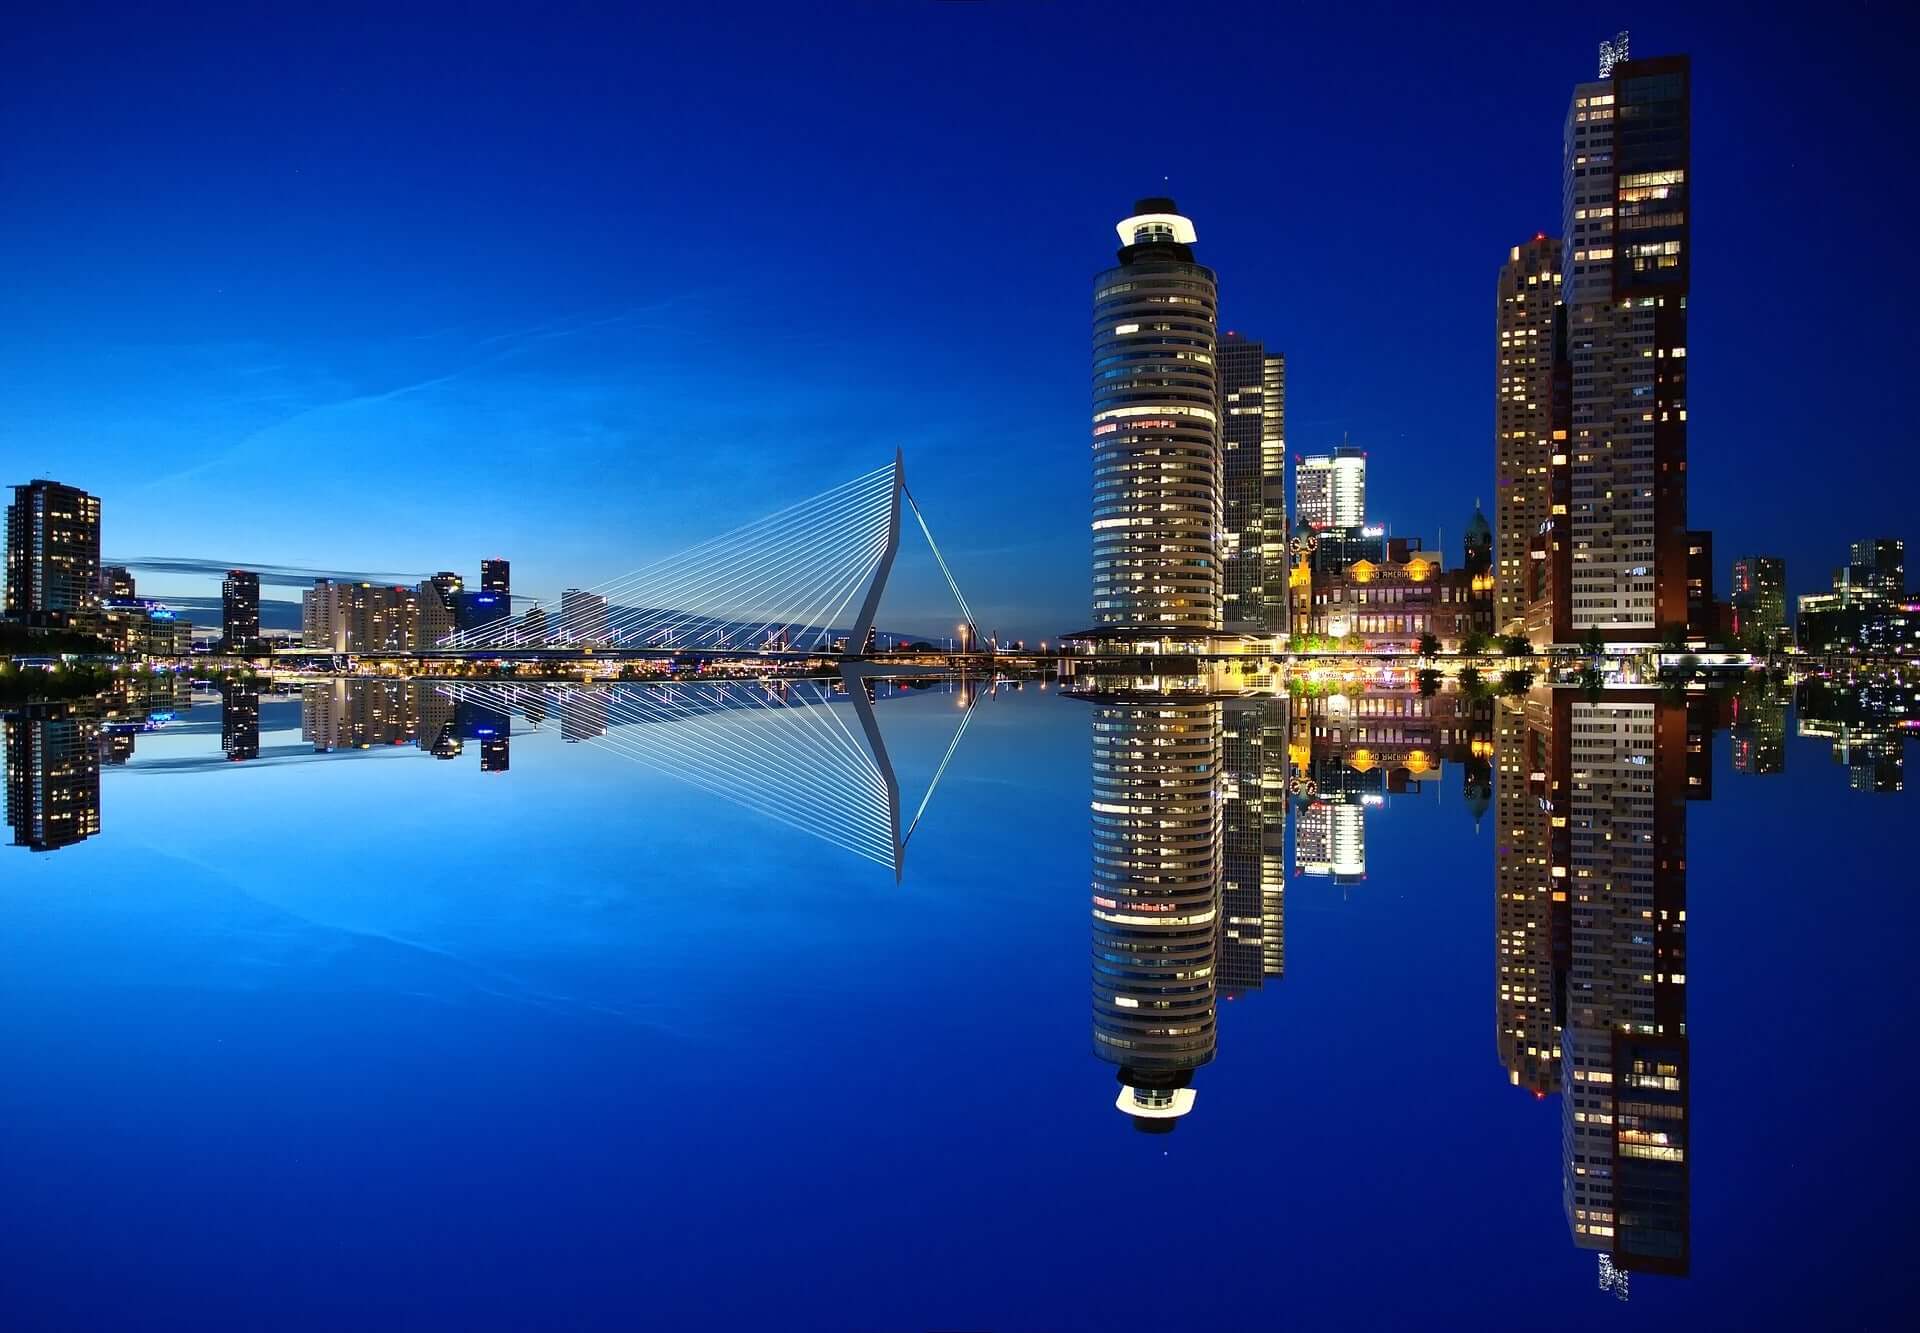 Hai provato i nostri Segnali? Se operi col FIB o MiniFIB, scopri i nostri Sistemi di Trading. Nella foto: Rotterdam (Olanda). Credits: https://pixabay.com/it/rotterdam-skyline-architettura-1598418/